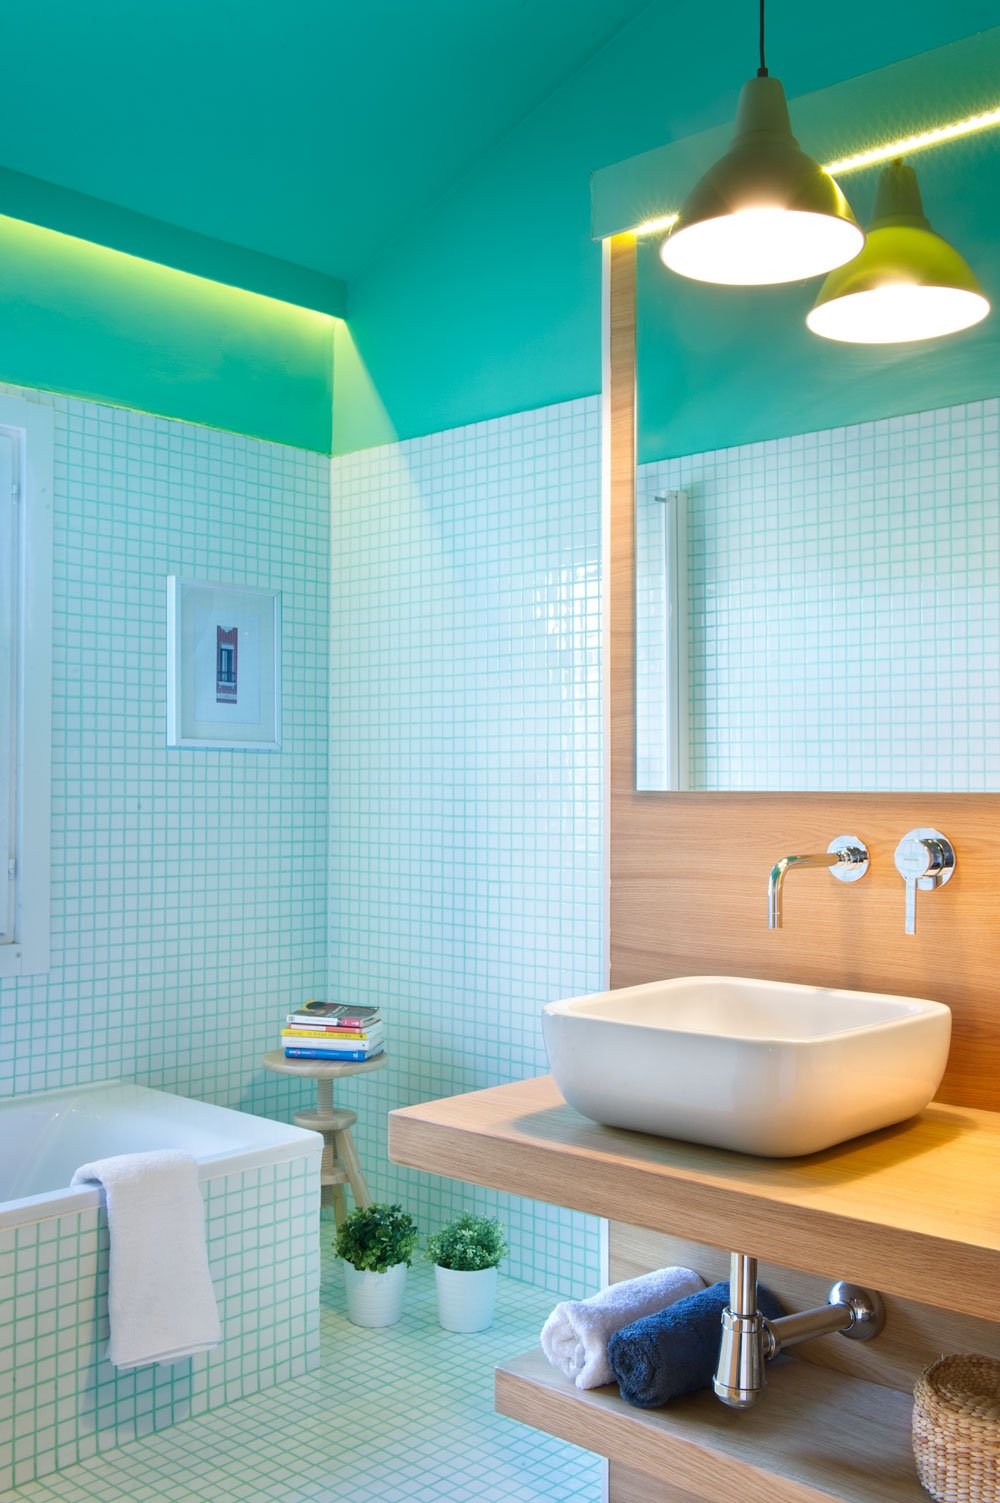 小块瓷砖生动地连接在一起，形成了整个浴室的地板和墙壁。一个舒适的浴缸很好用，一个实用的木凳放你的书，水槽下面的架子放洗漱用品和毛巾，方便你。